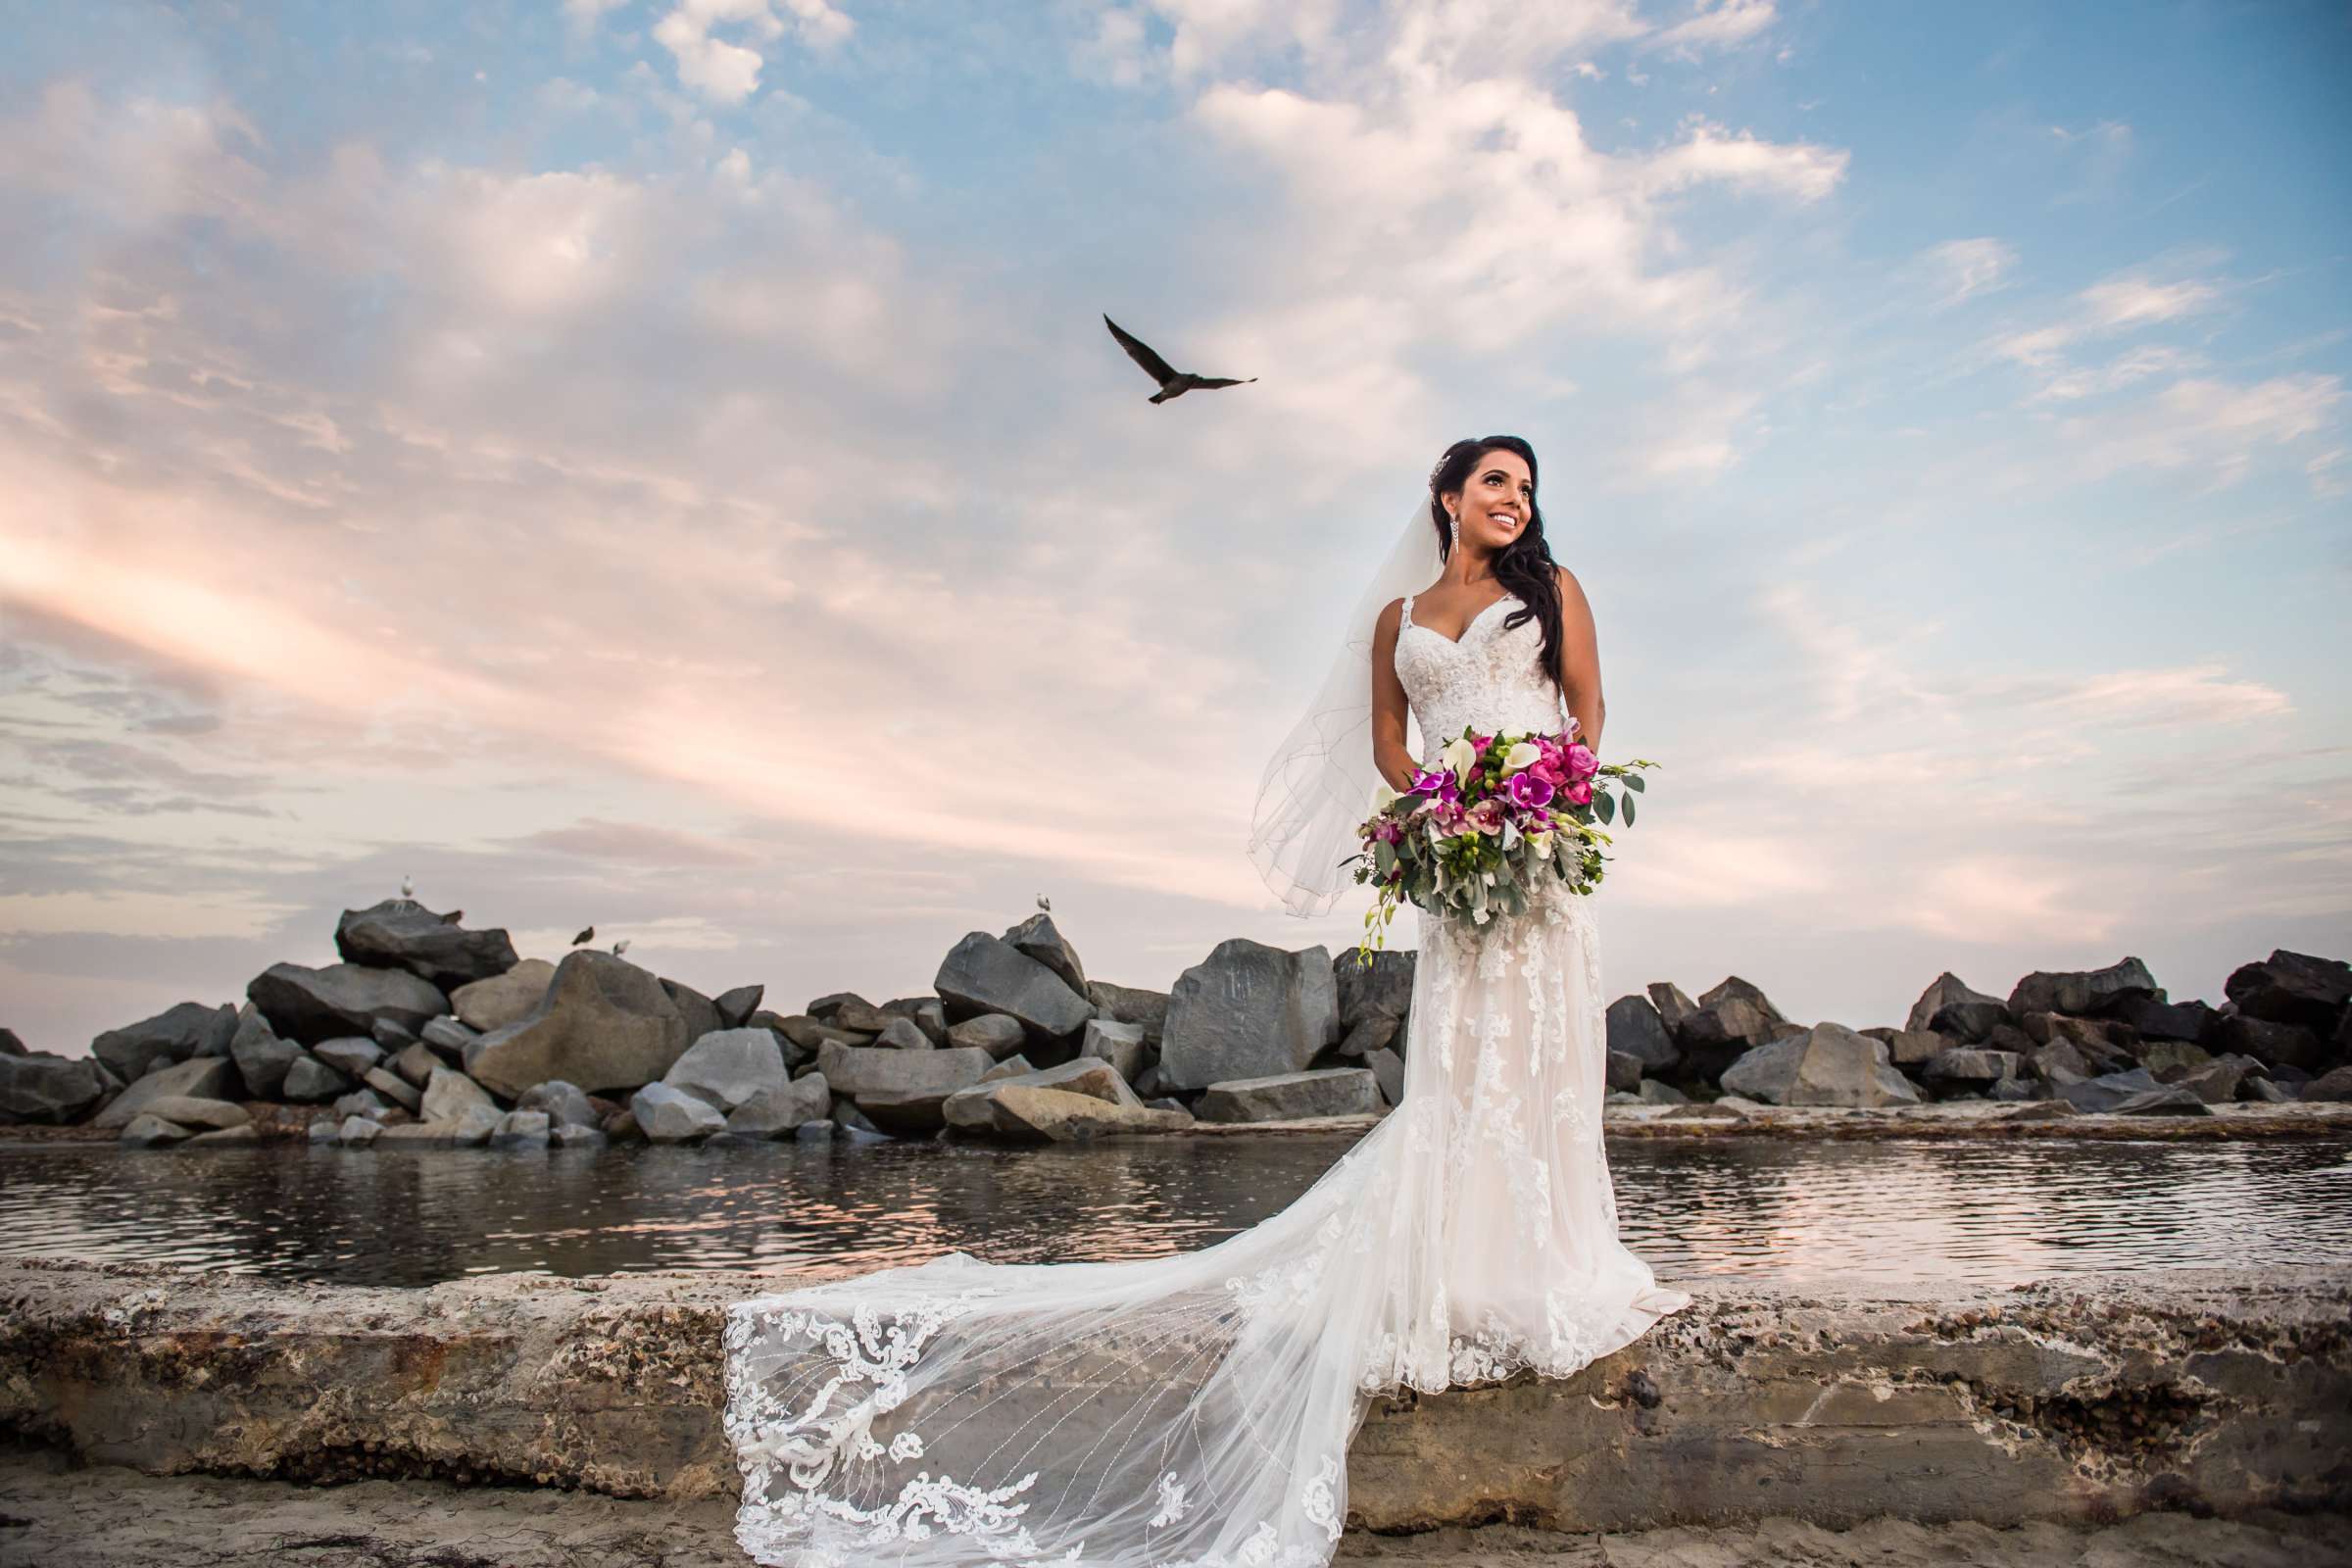 Hotel Del Coronado Wedding, Sabrina and Gehaan Wedding Photo #409143 by True Photography